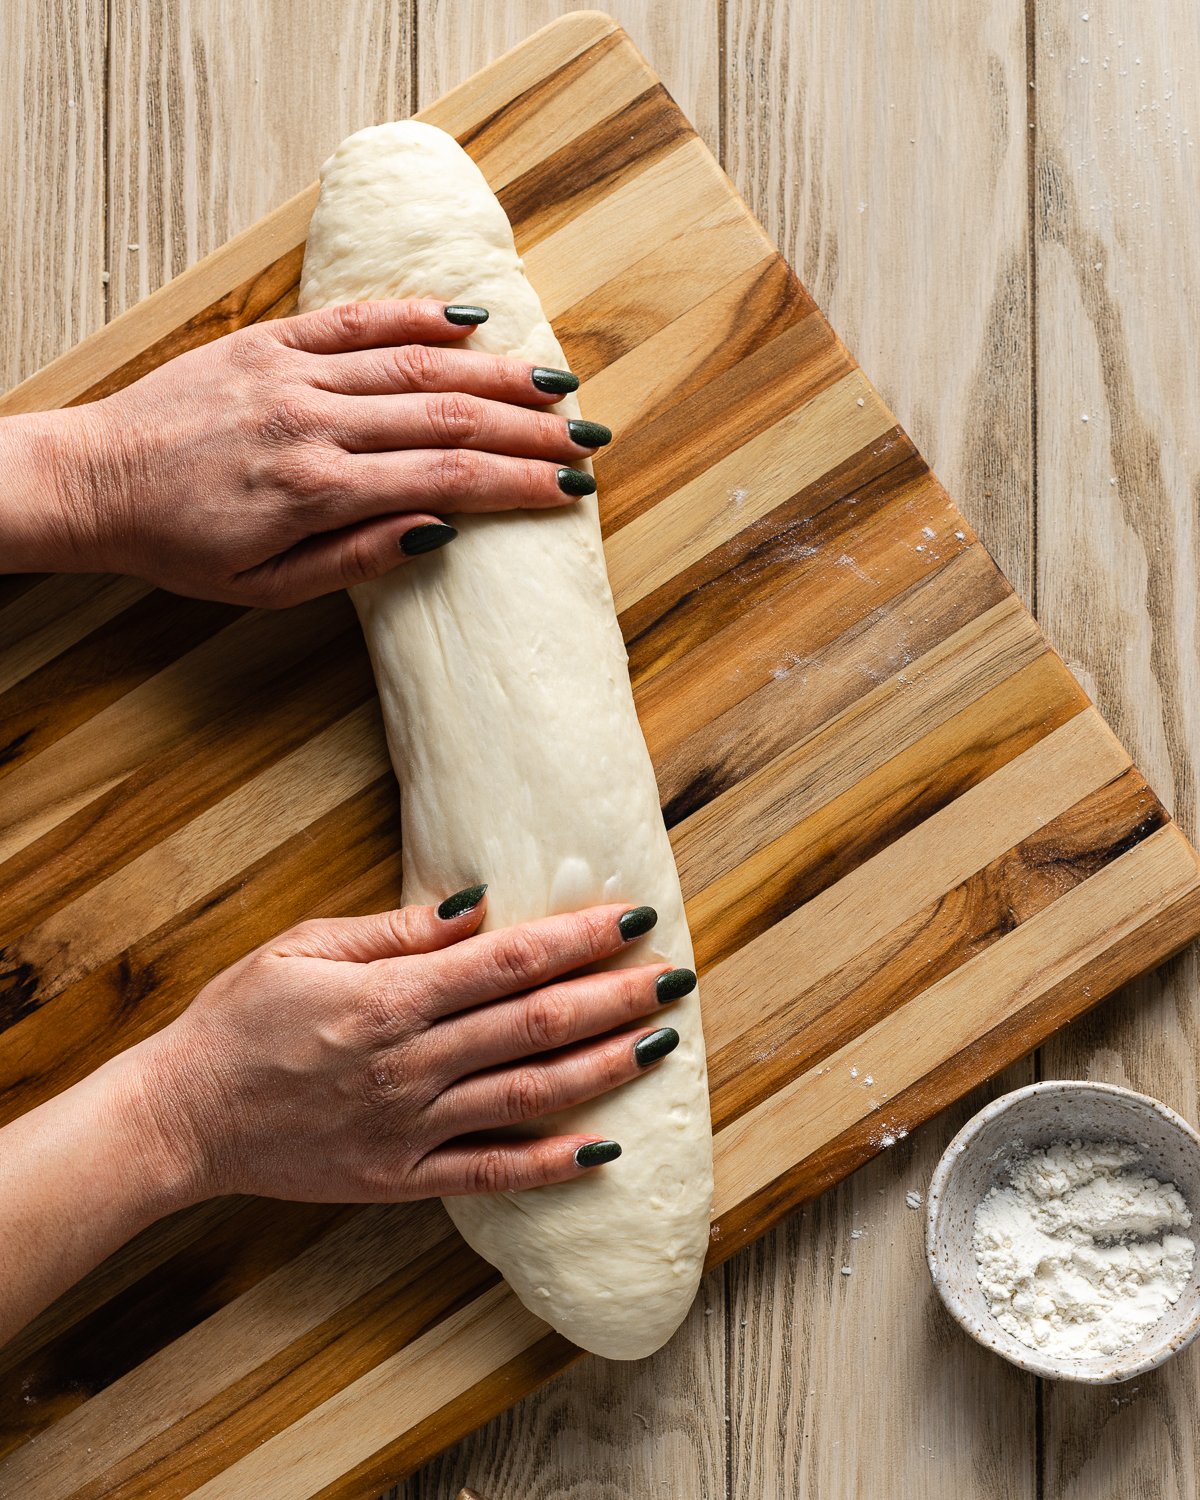 hands shaping dough into a long baton